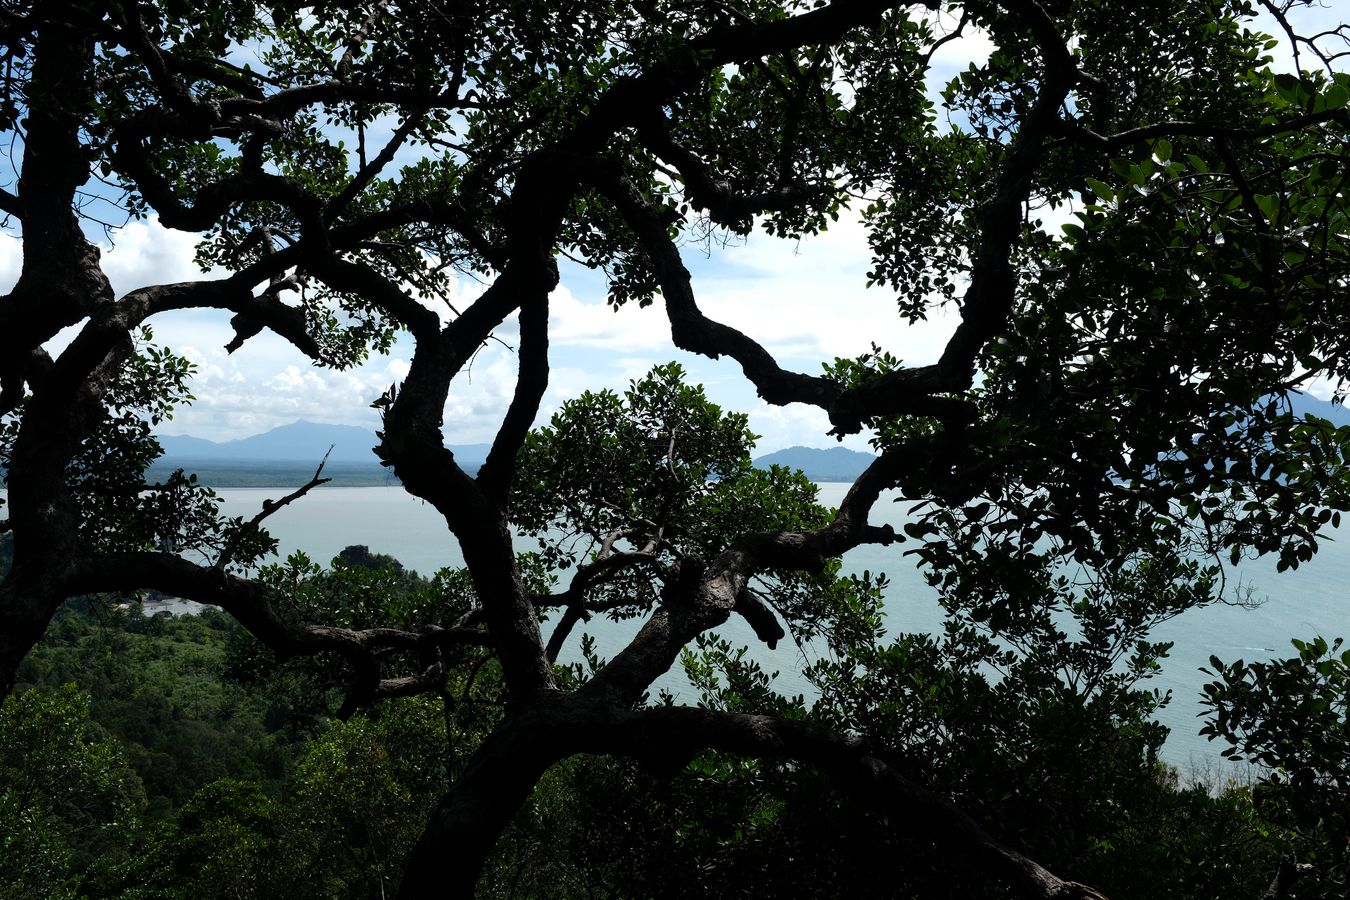 Rainforest Landscape and Santubong Mountain View